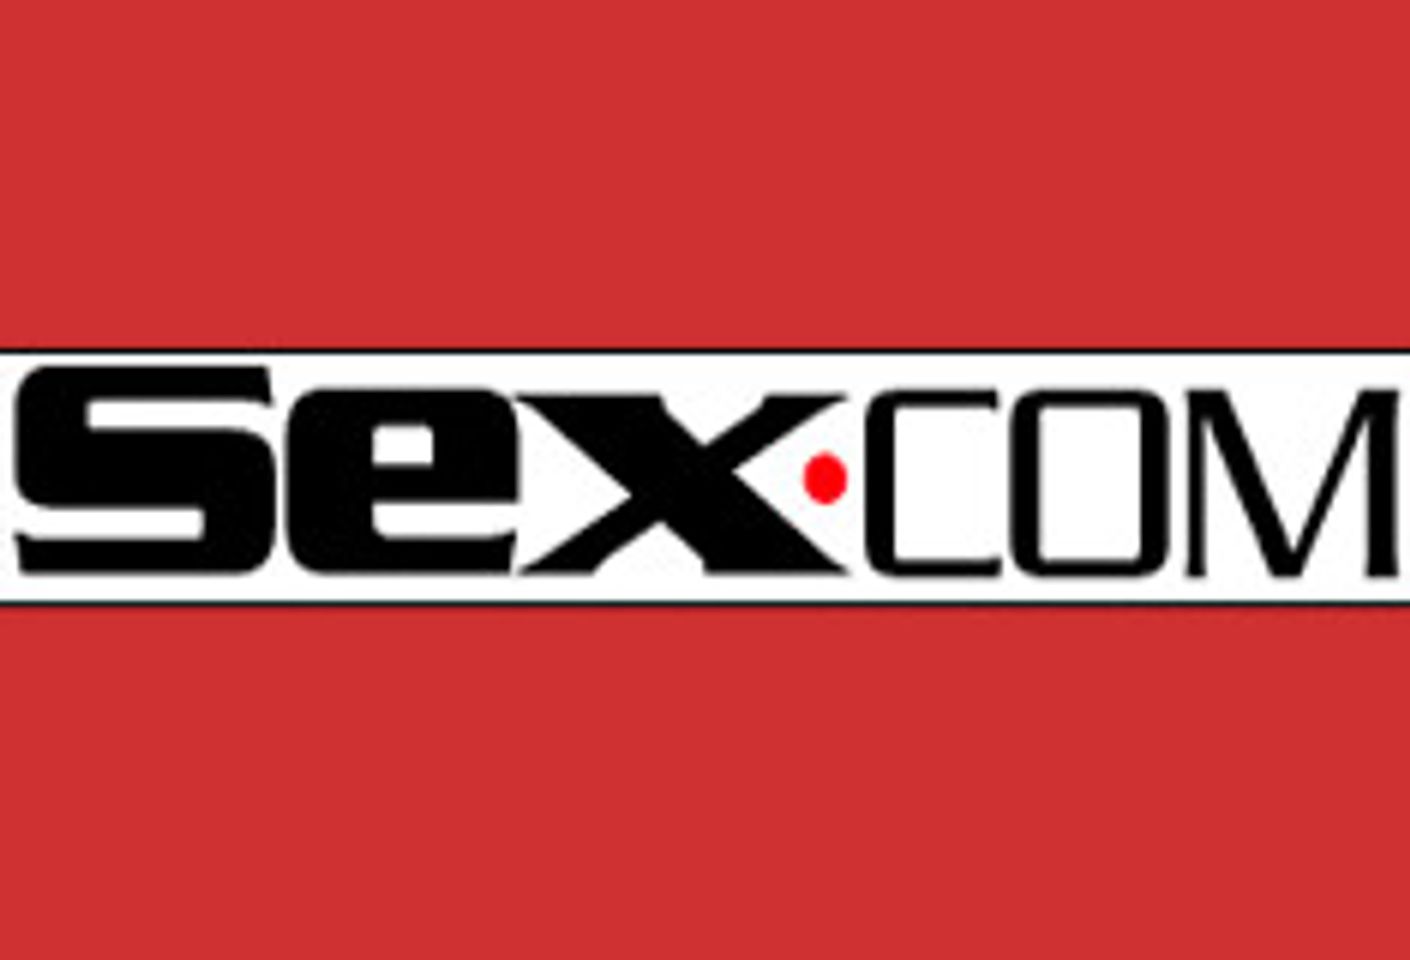 Sex.com Ready to Define Itself